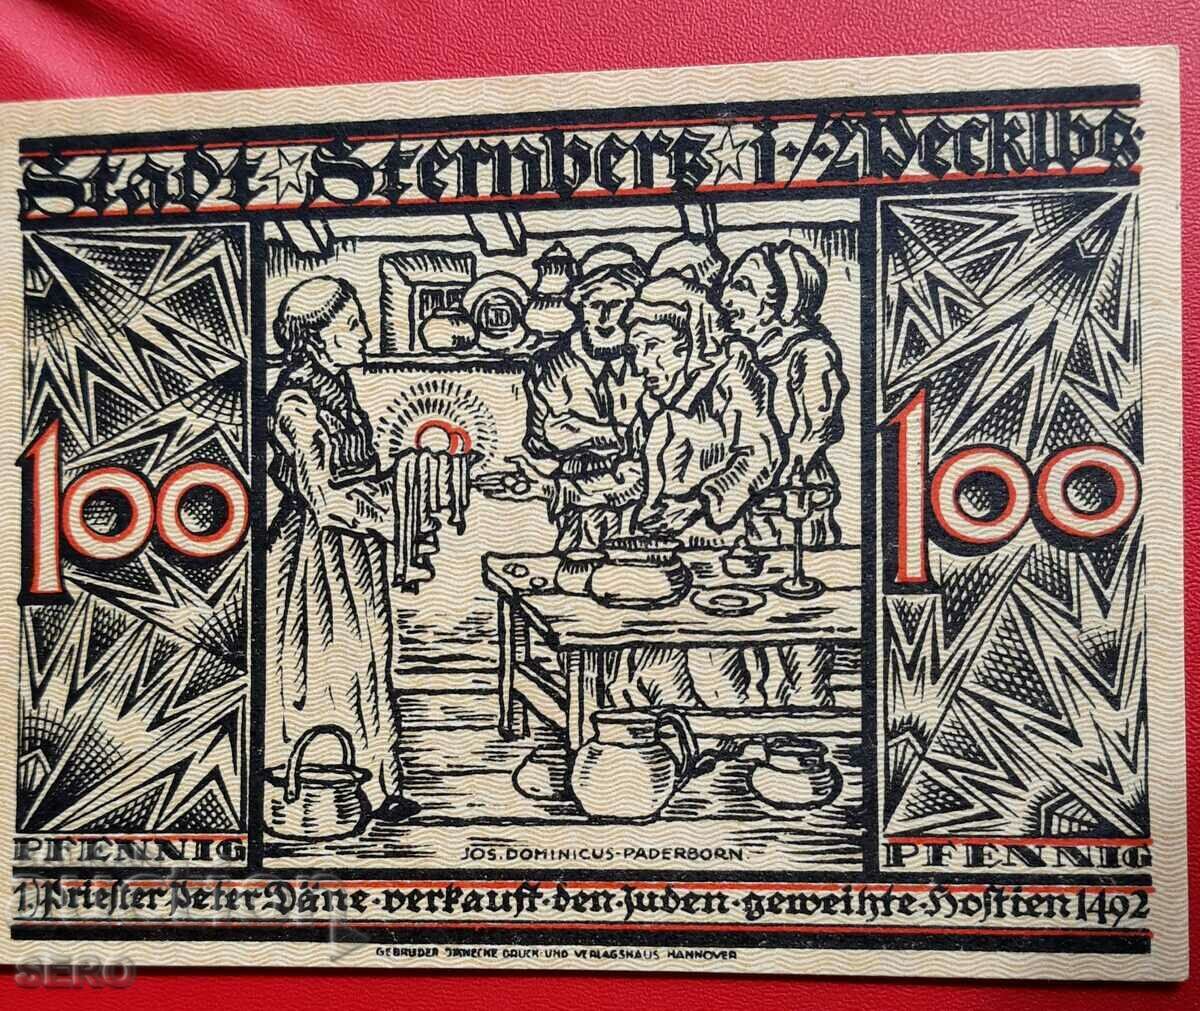 Τραπεζογραμμάτιο-Γερμανία-Μεκλεμβούργο-Πομερανία-Στέρνμπεργκ-100 pf. 1922